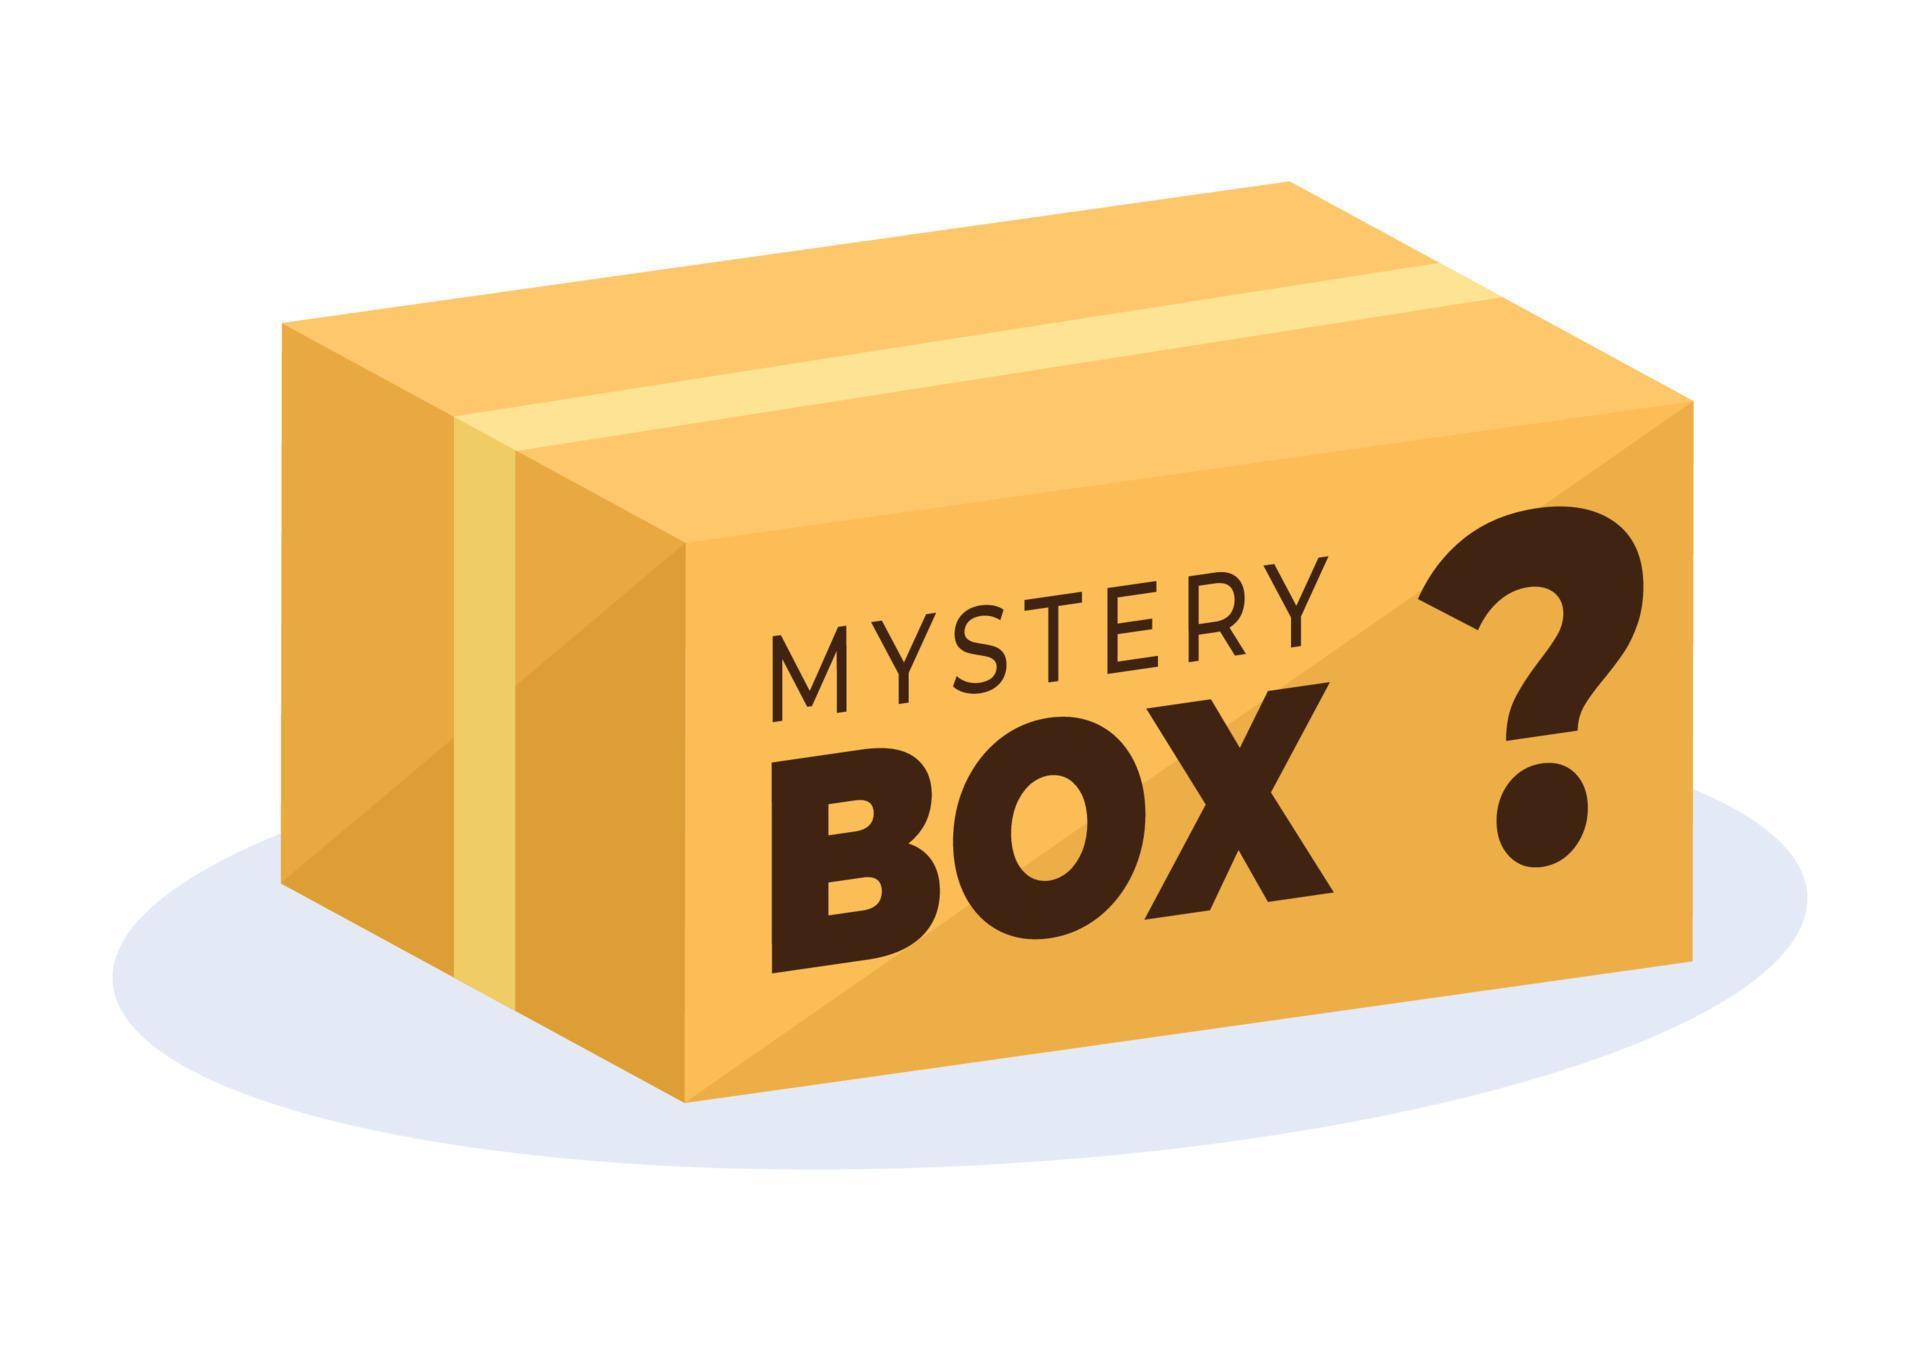 coffret cadeau mystère avec boîte en carton ouverte à l'intérieur avec un point d'interrogation, un cadeau porte-bonheur ou une autre surprise en illustration de style dessin animé plat vecteur